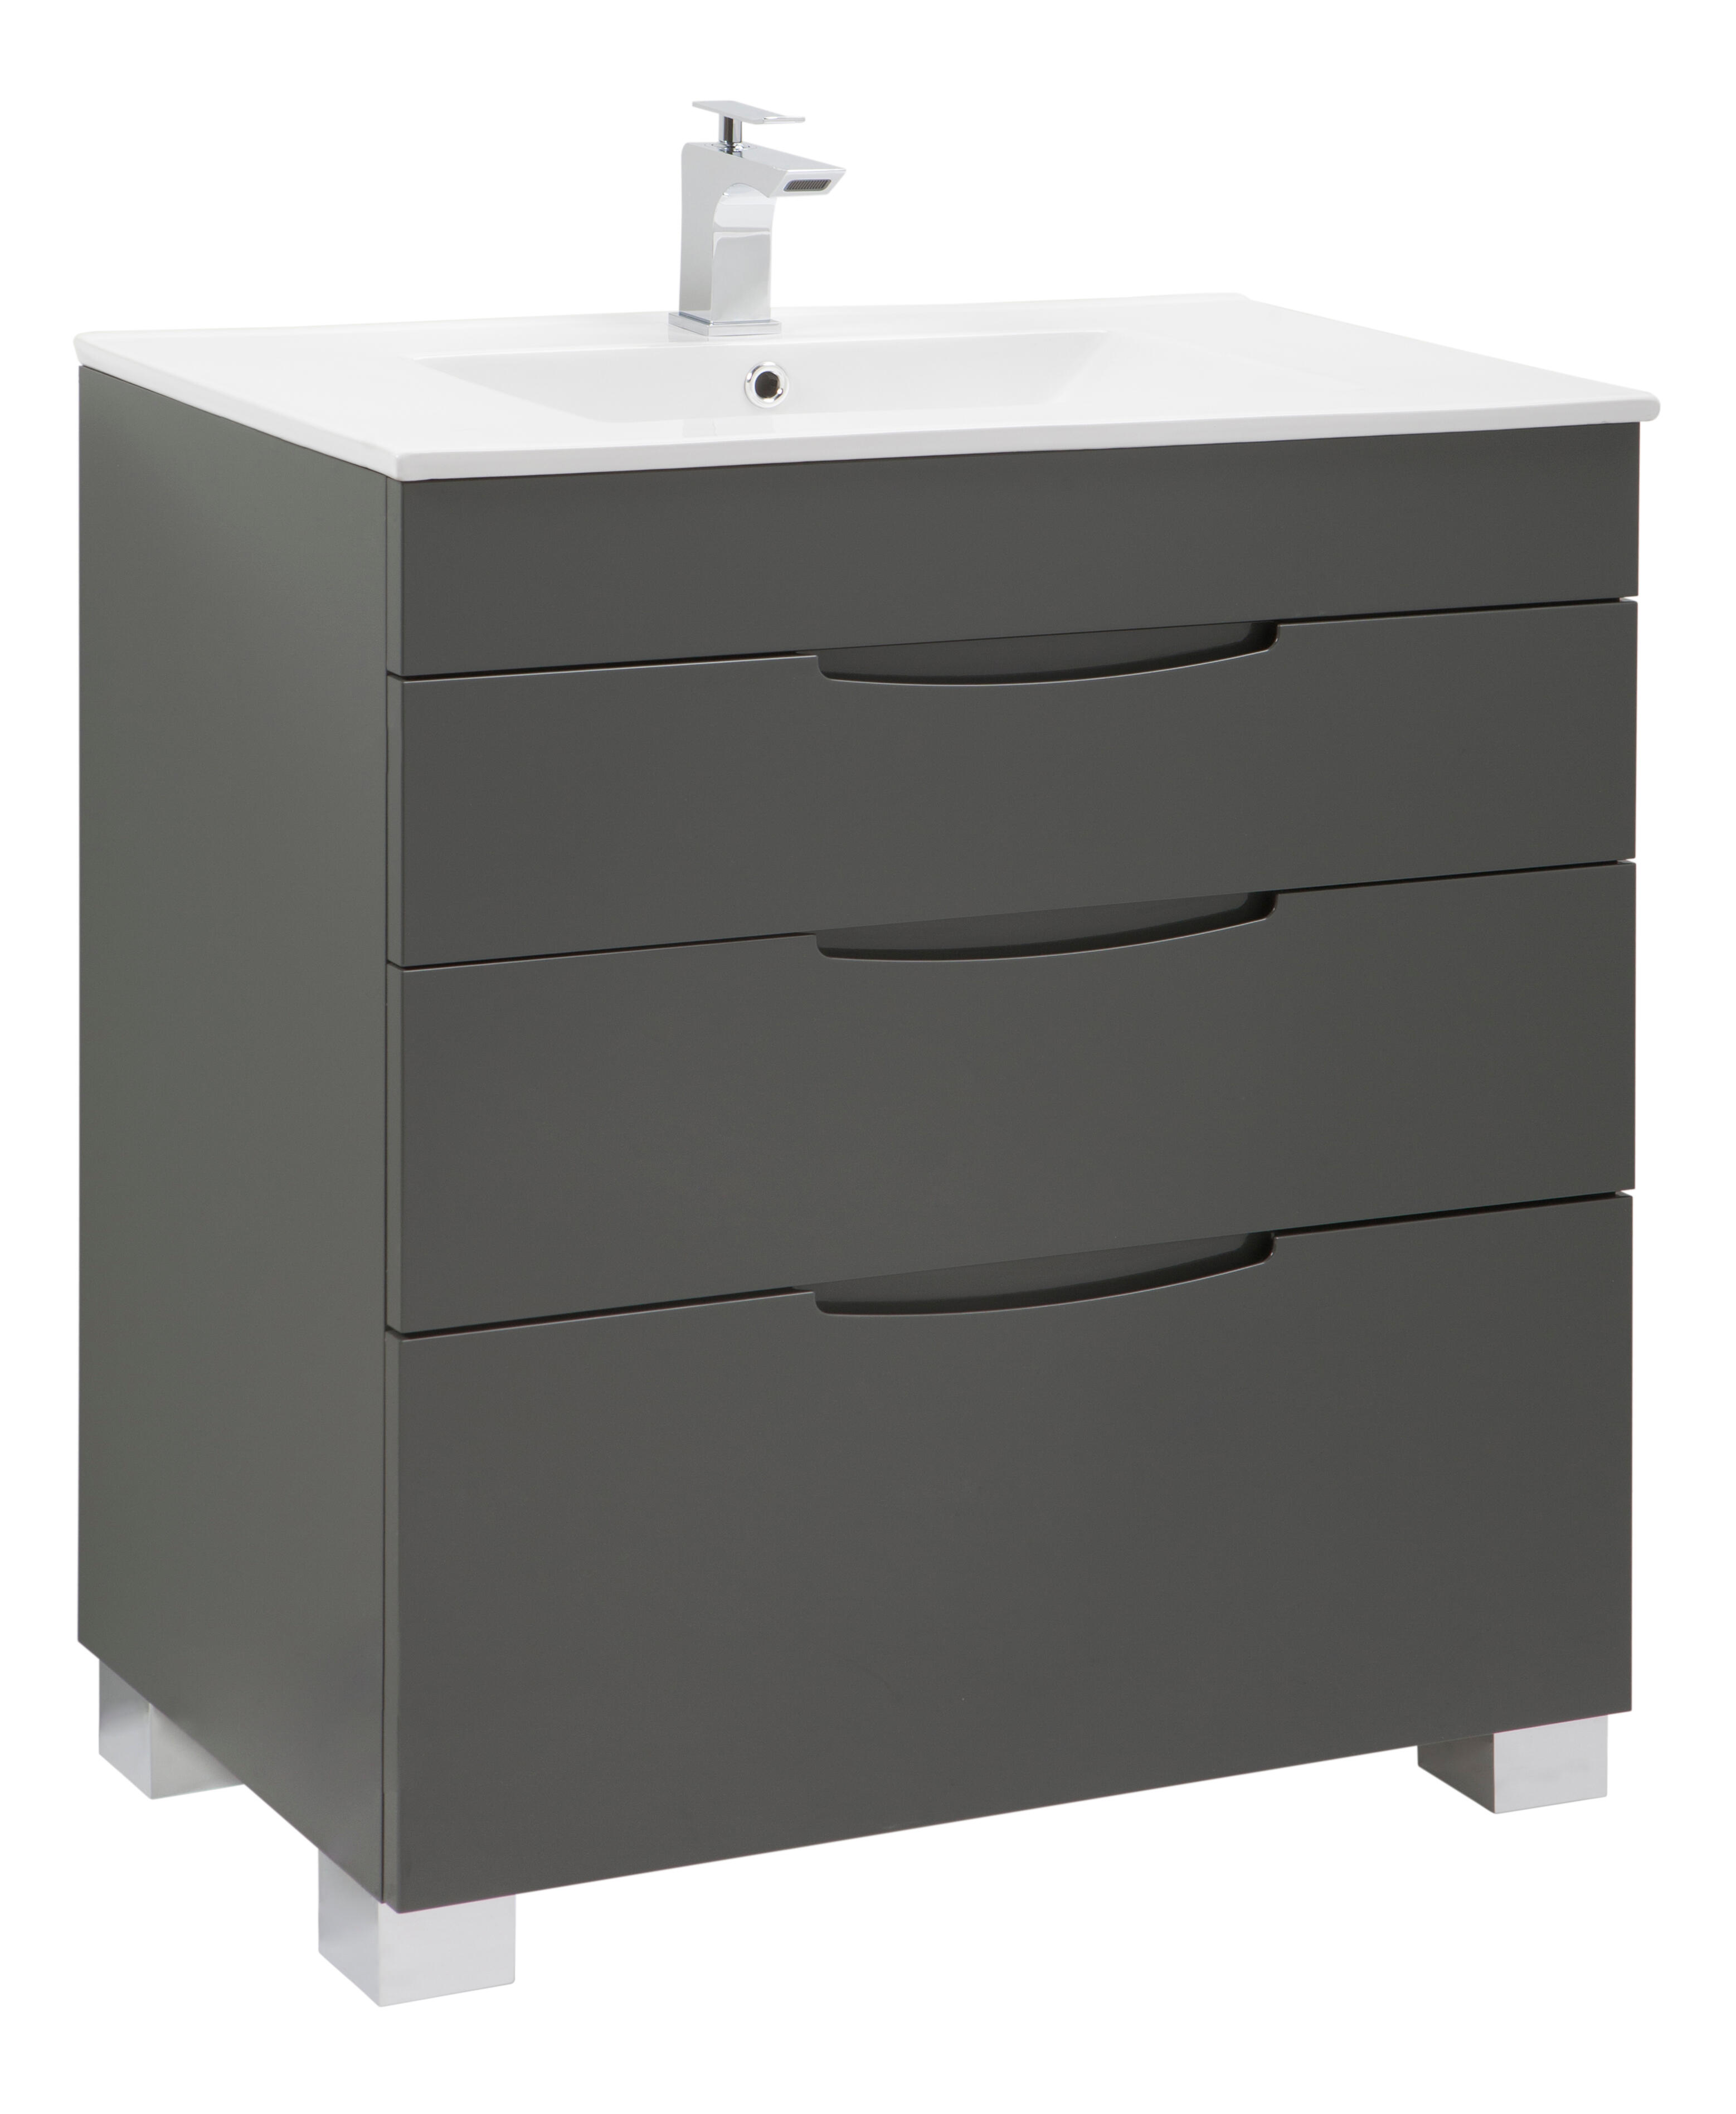 Mueble de baño asimétrico gris grafito 80x45 cm